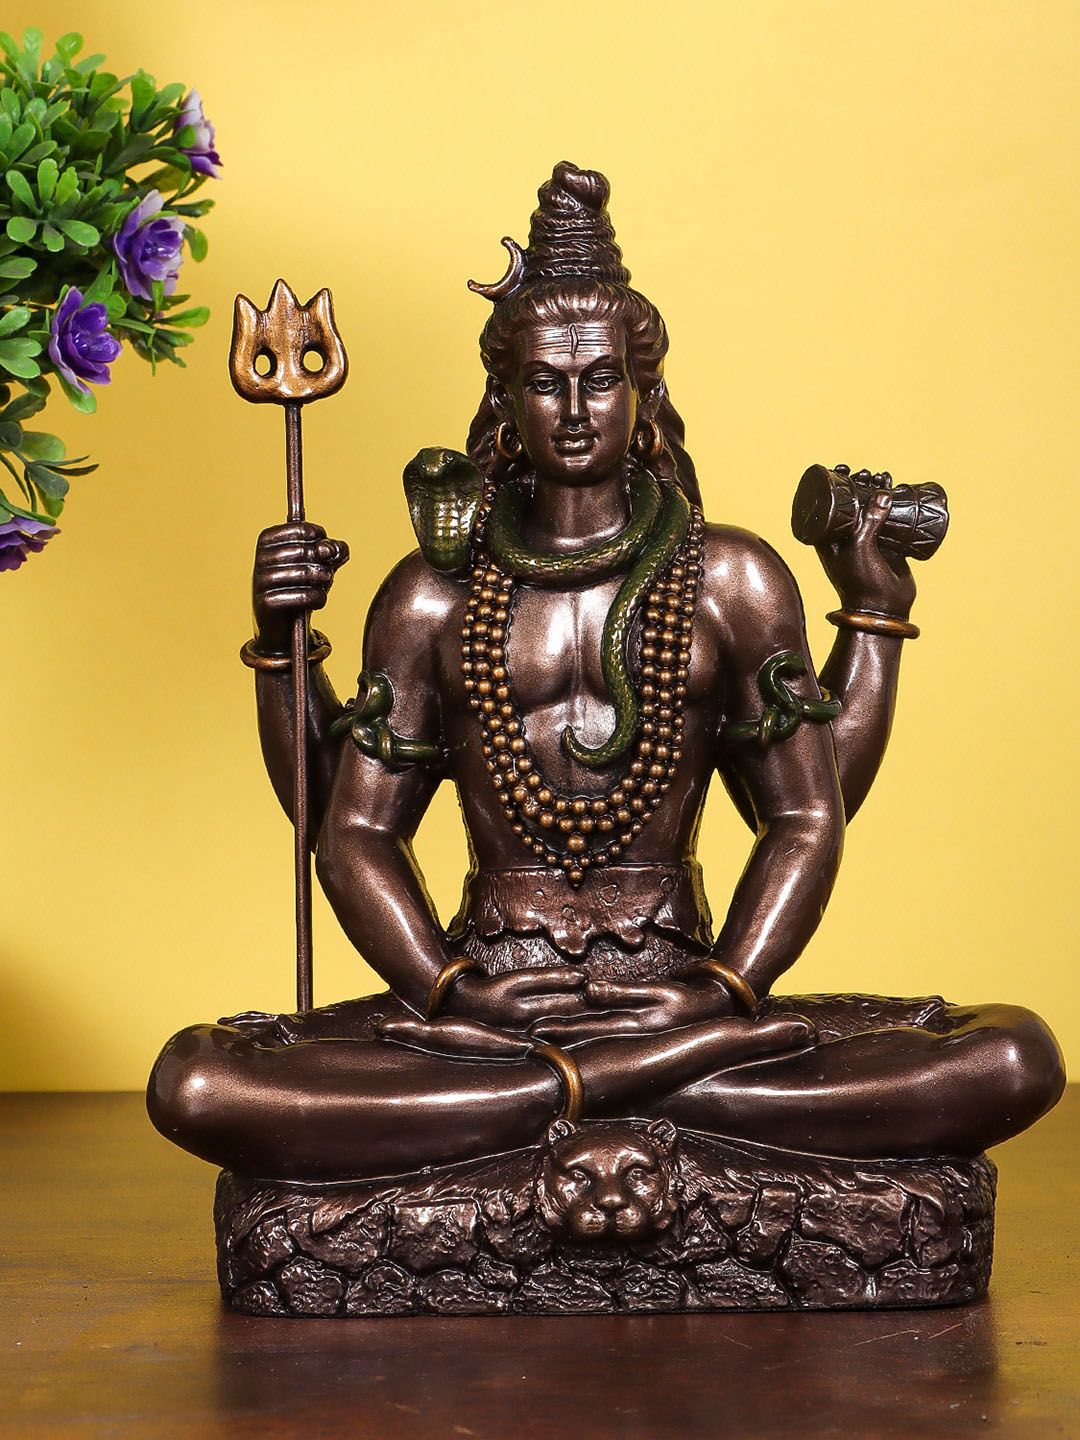 StatueStudio Bronze-Colored Shiva Idol Statue Showpieces Price in India